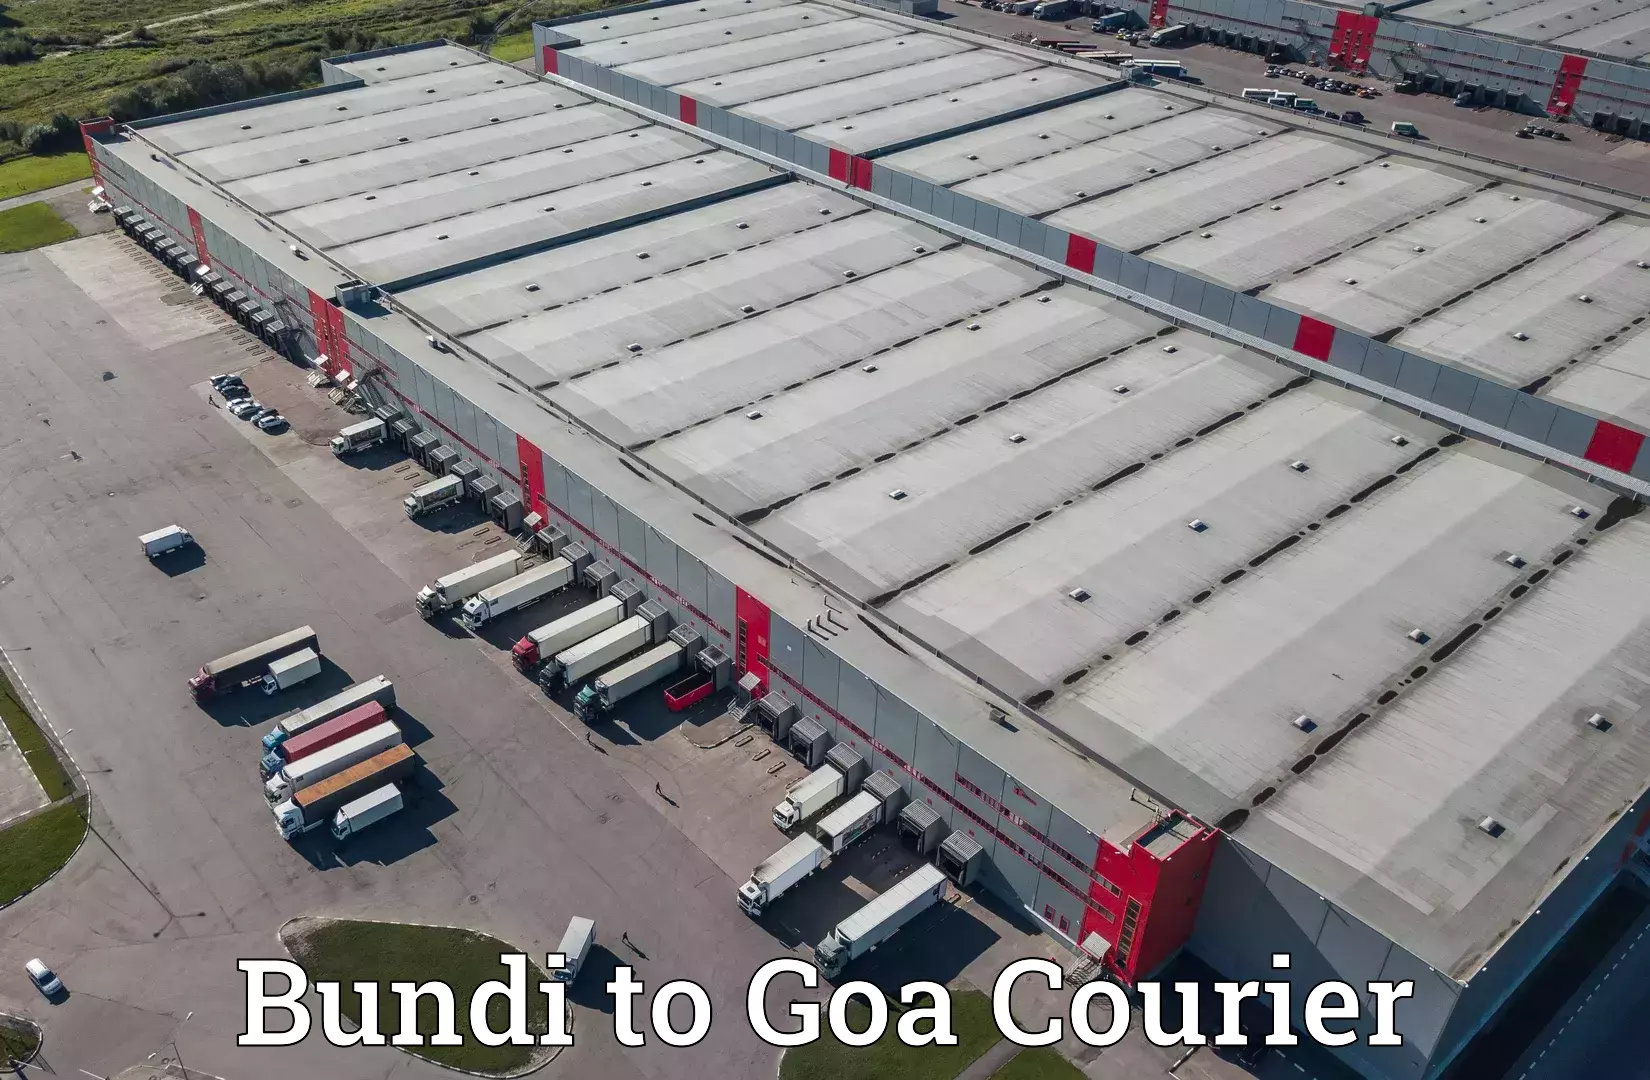 Express package transport Bundi to Goa